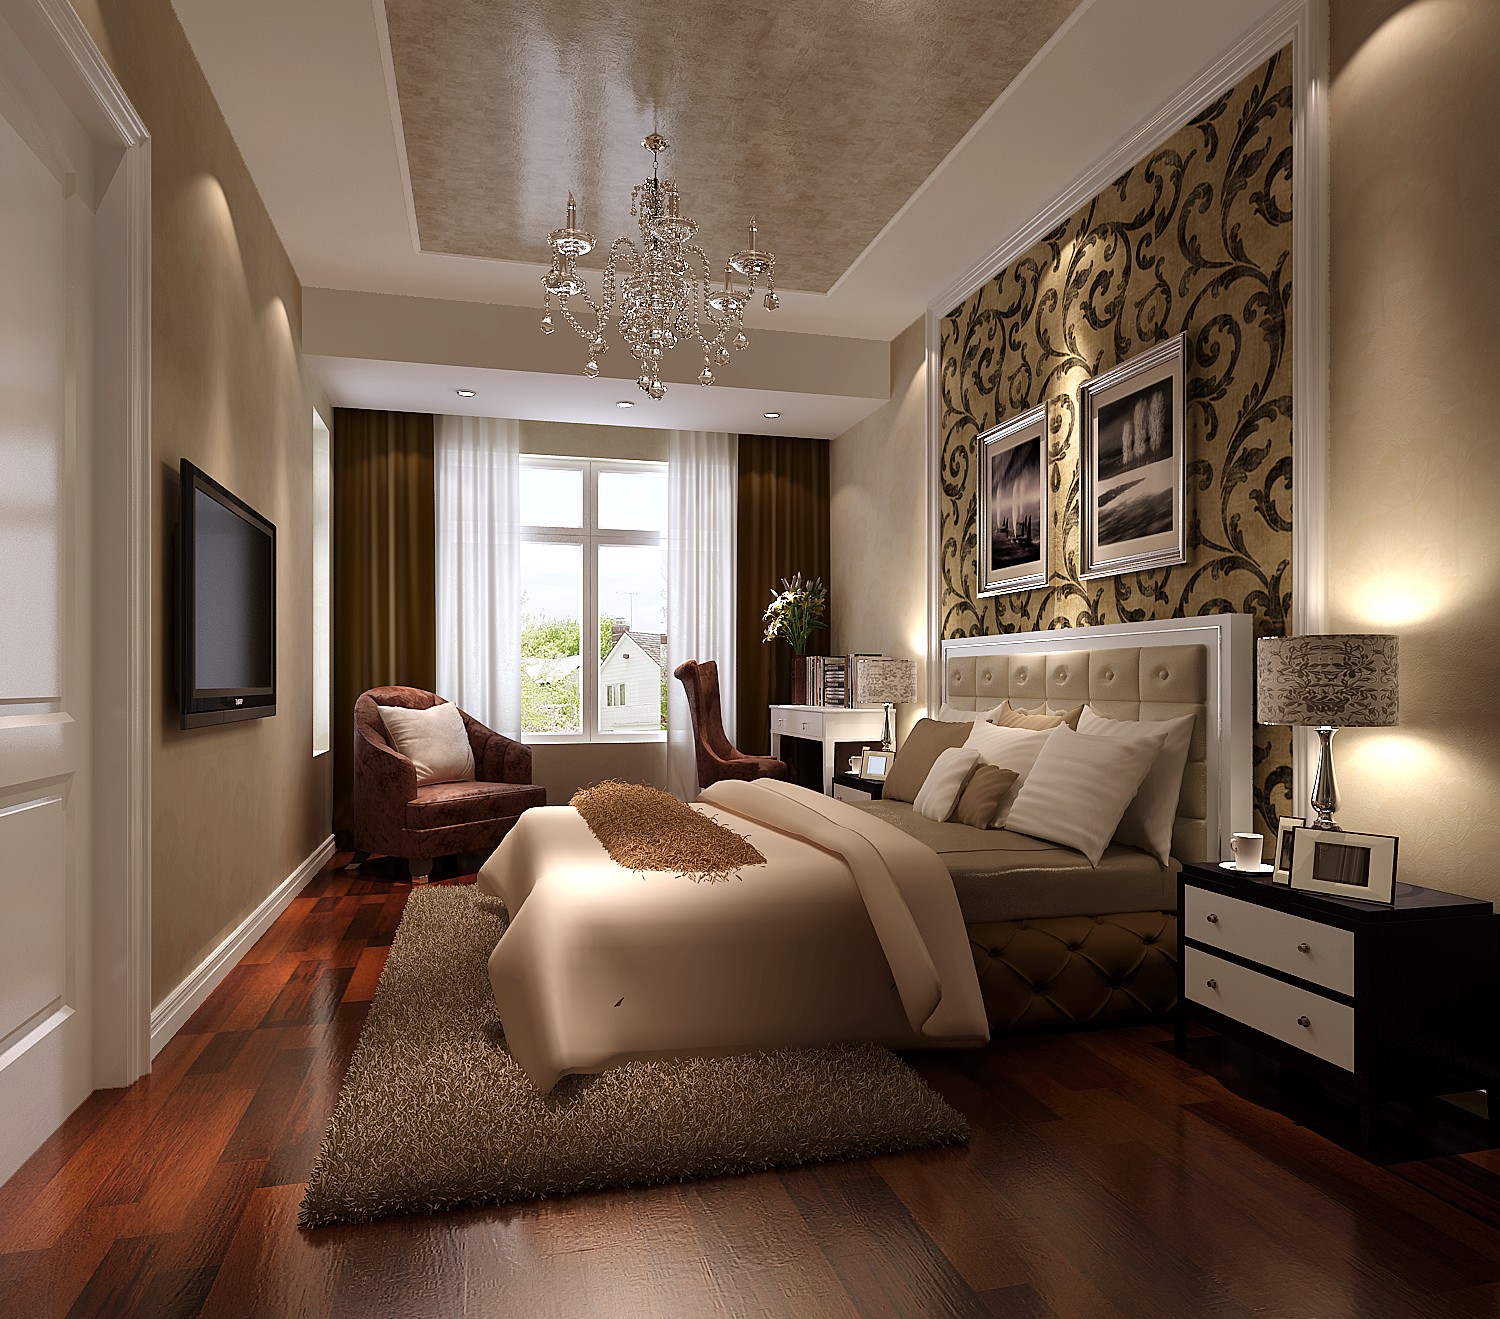 高度国际 k2海棠湾 简欧风格 公寓 卧室图片来自高度国际在k2海棠湾-简欧风格的分享